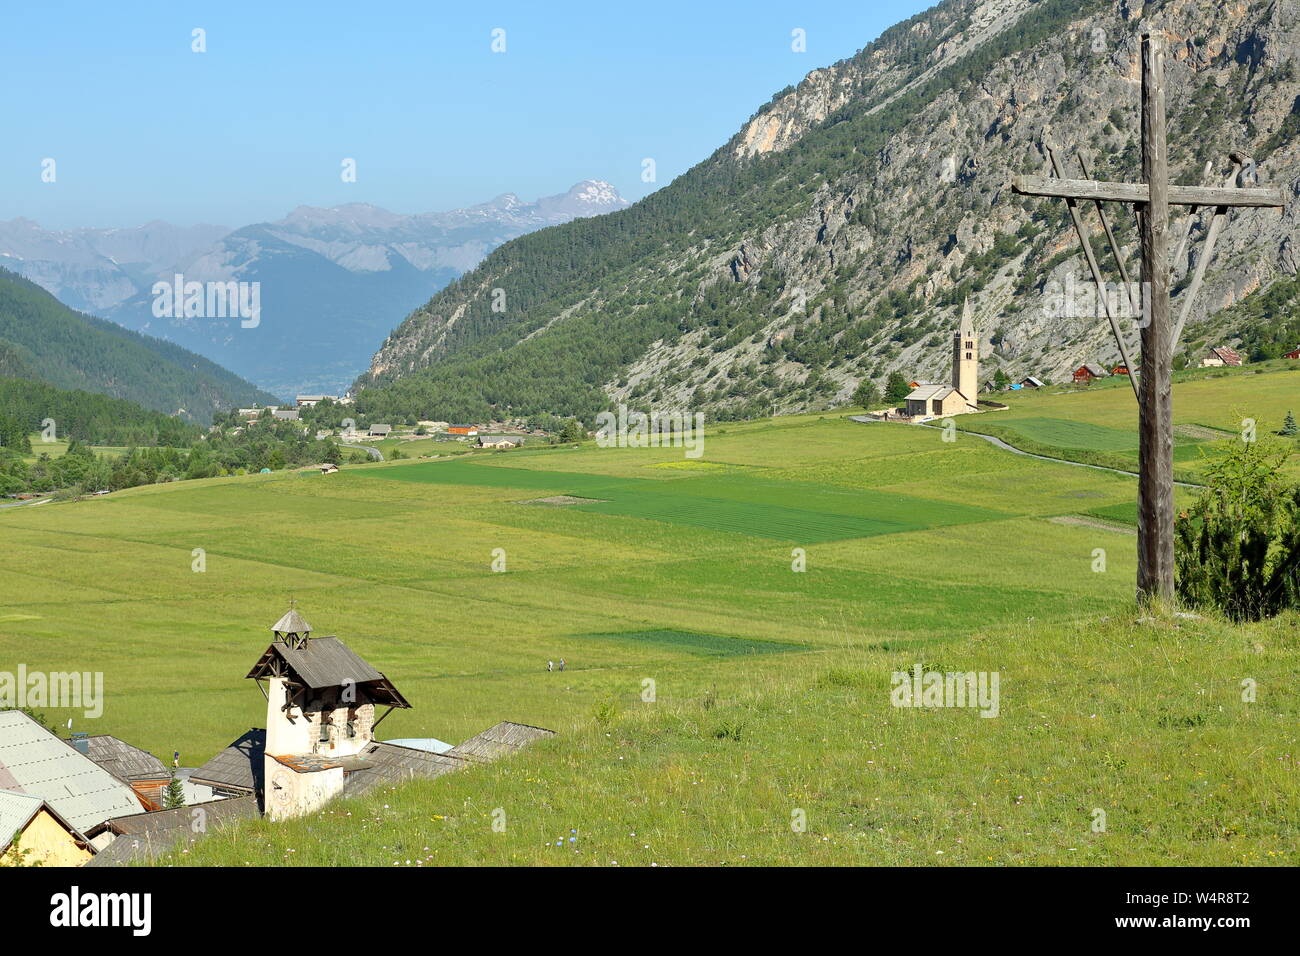 Ceillac village entouré de champs verts, Parc Naturel Régional du Queyras, Alpes du Sud, France Banque D'Images